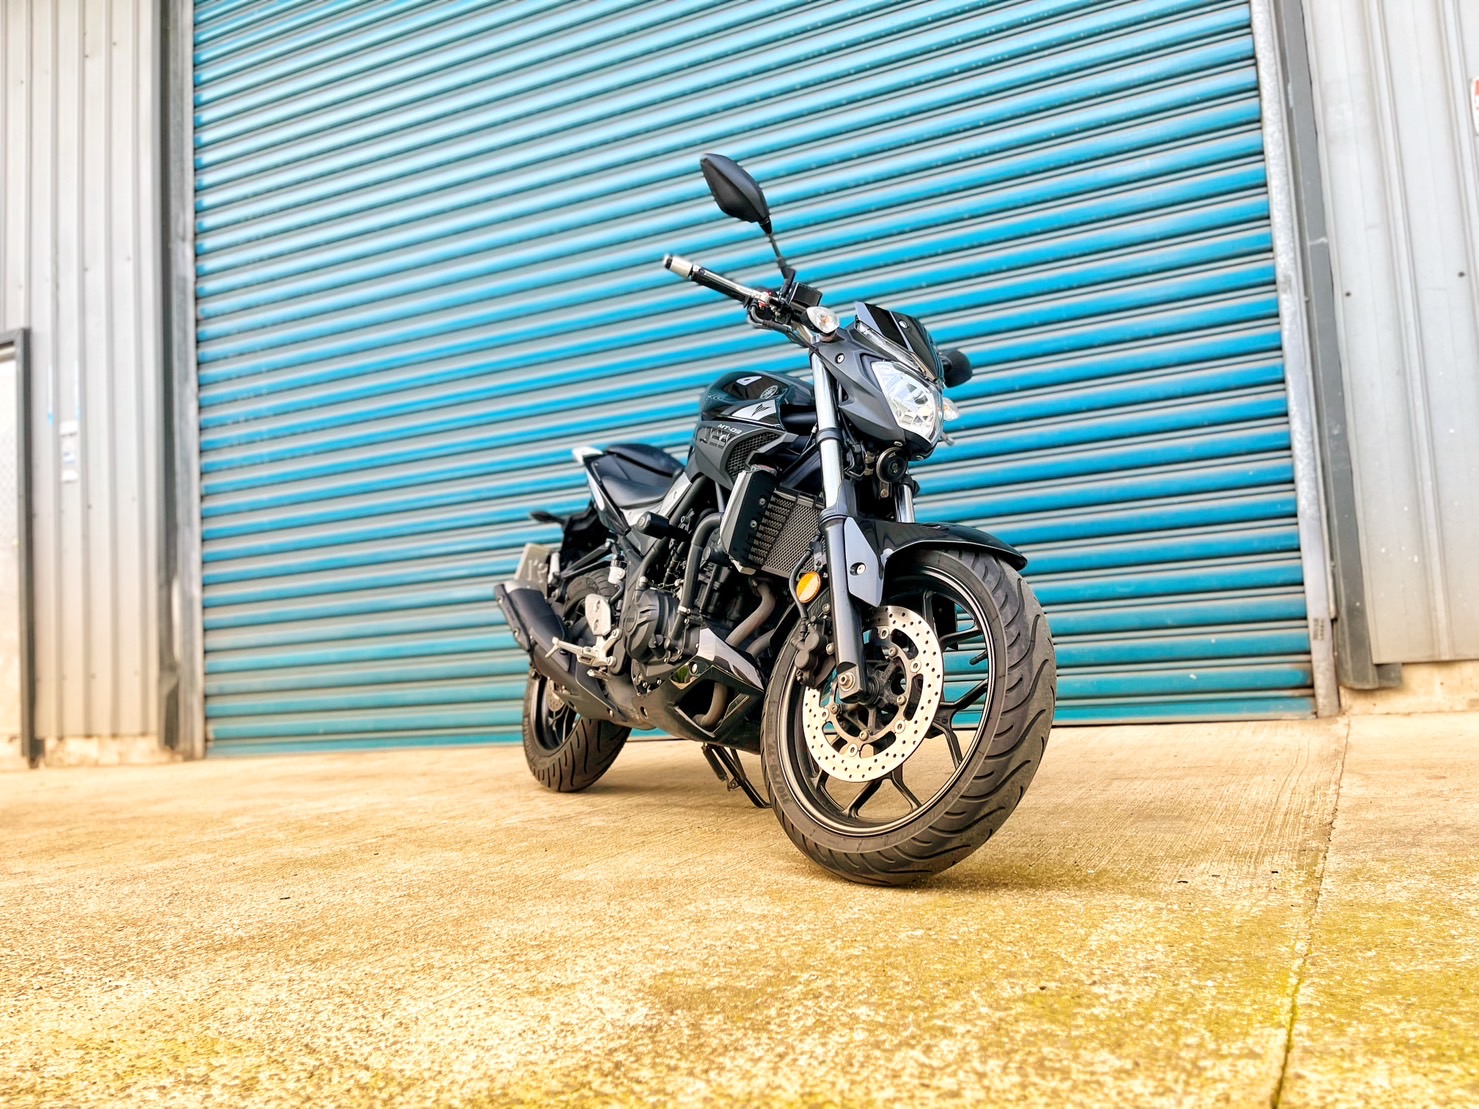 【小資族二手重機買賣】YAMAHA MT-03 - 「Webike-摩托車市」 里程保證 無摔車無事故 小資族二手重機買賣